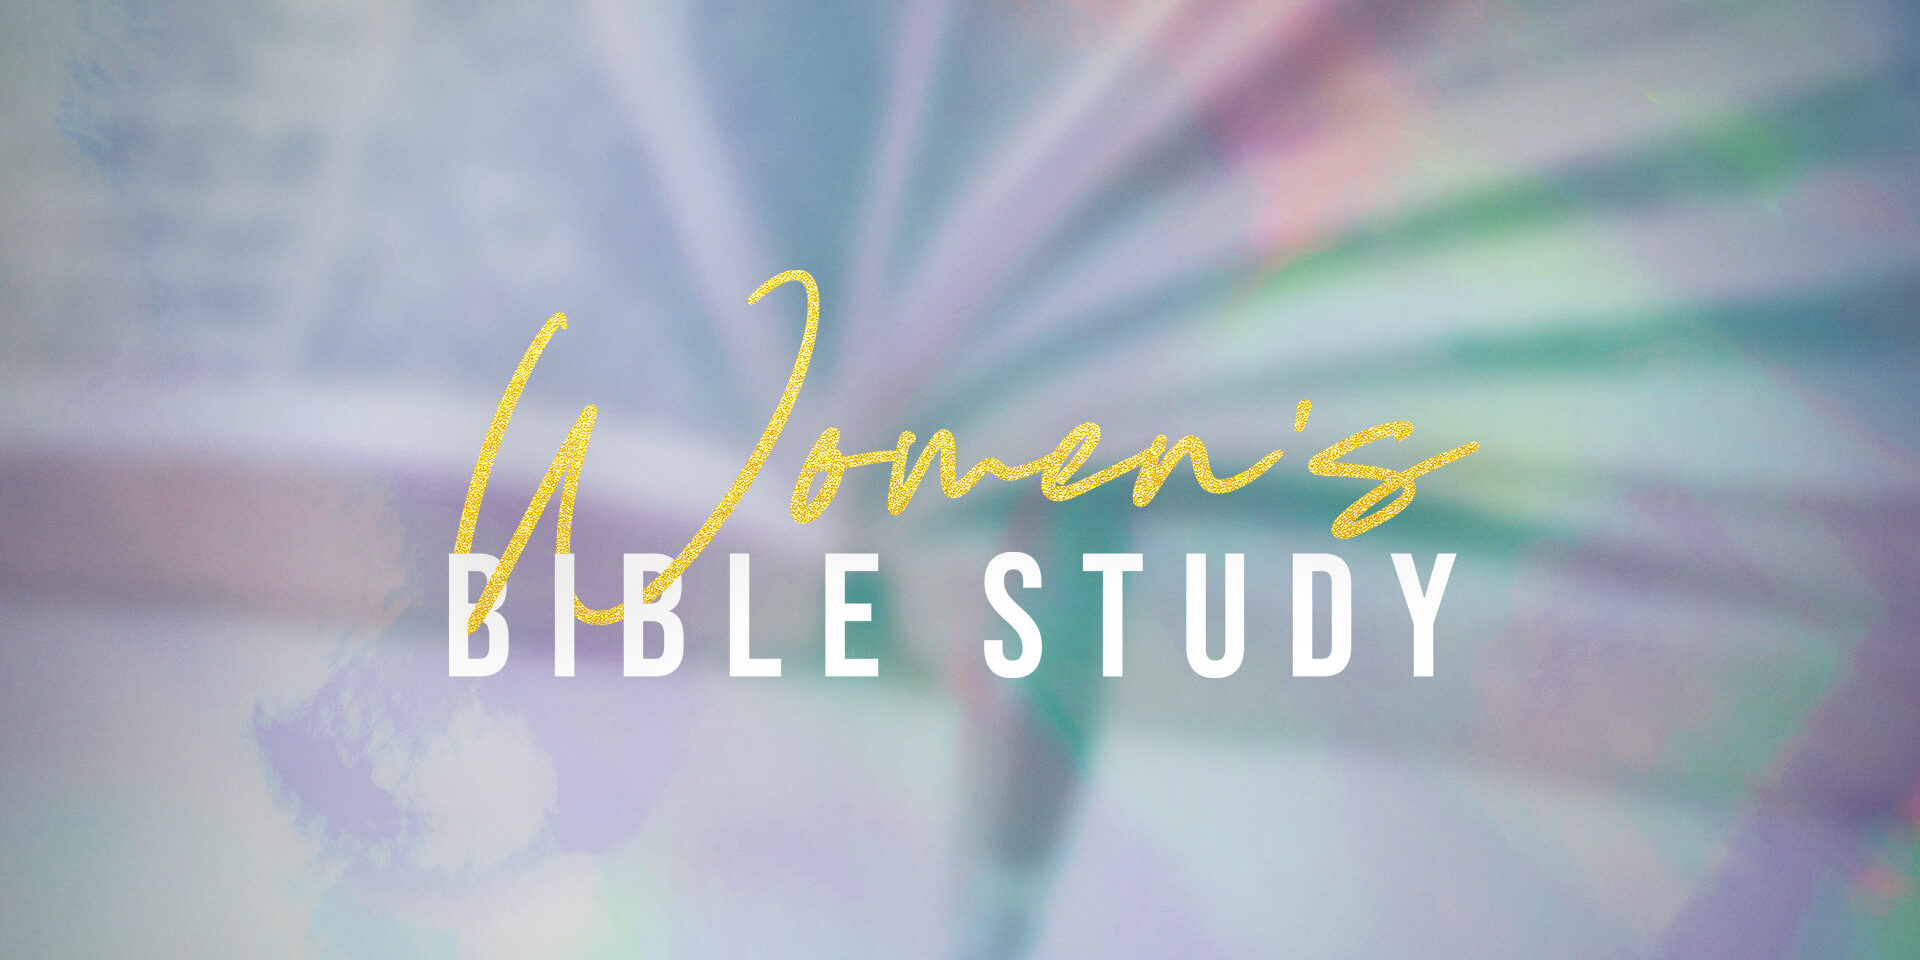 womens bible study